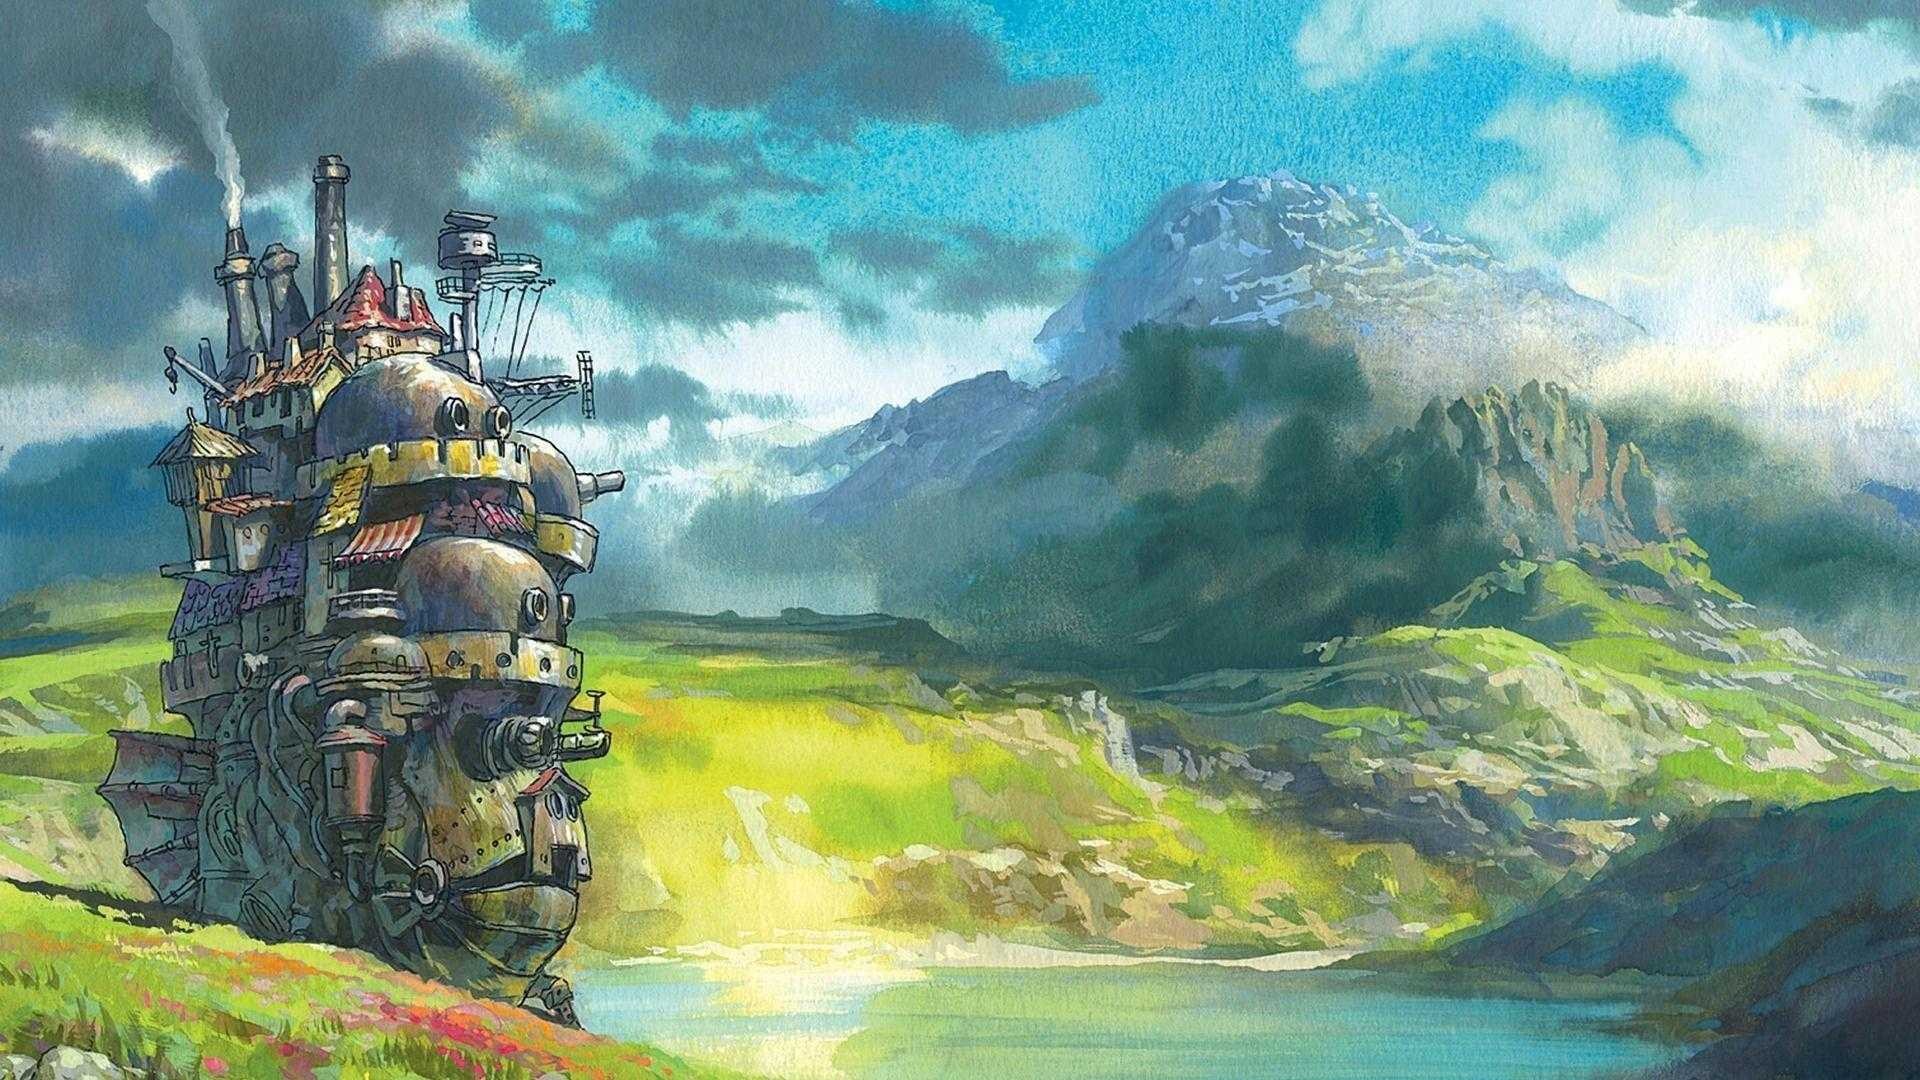 Studio Ghibli Wallpaper k